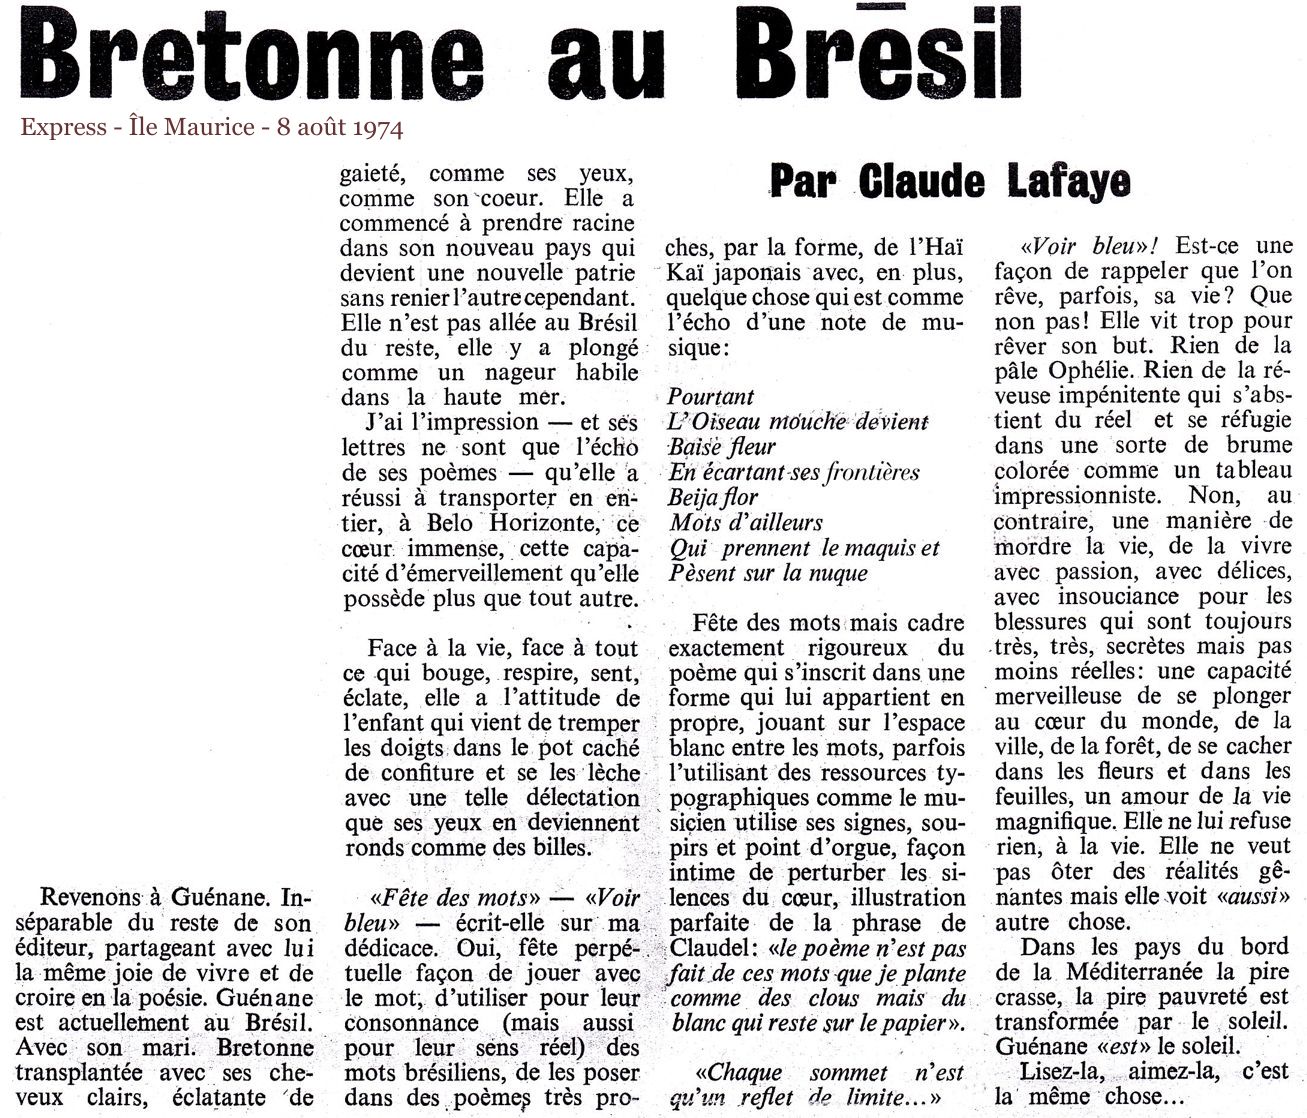 Guénane - Express - le Maurice - 8 aot 1974.